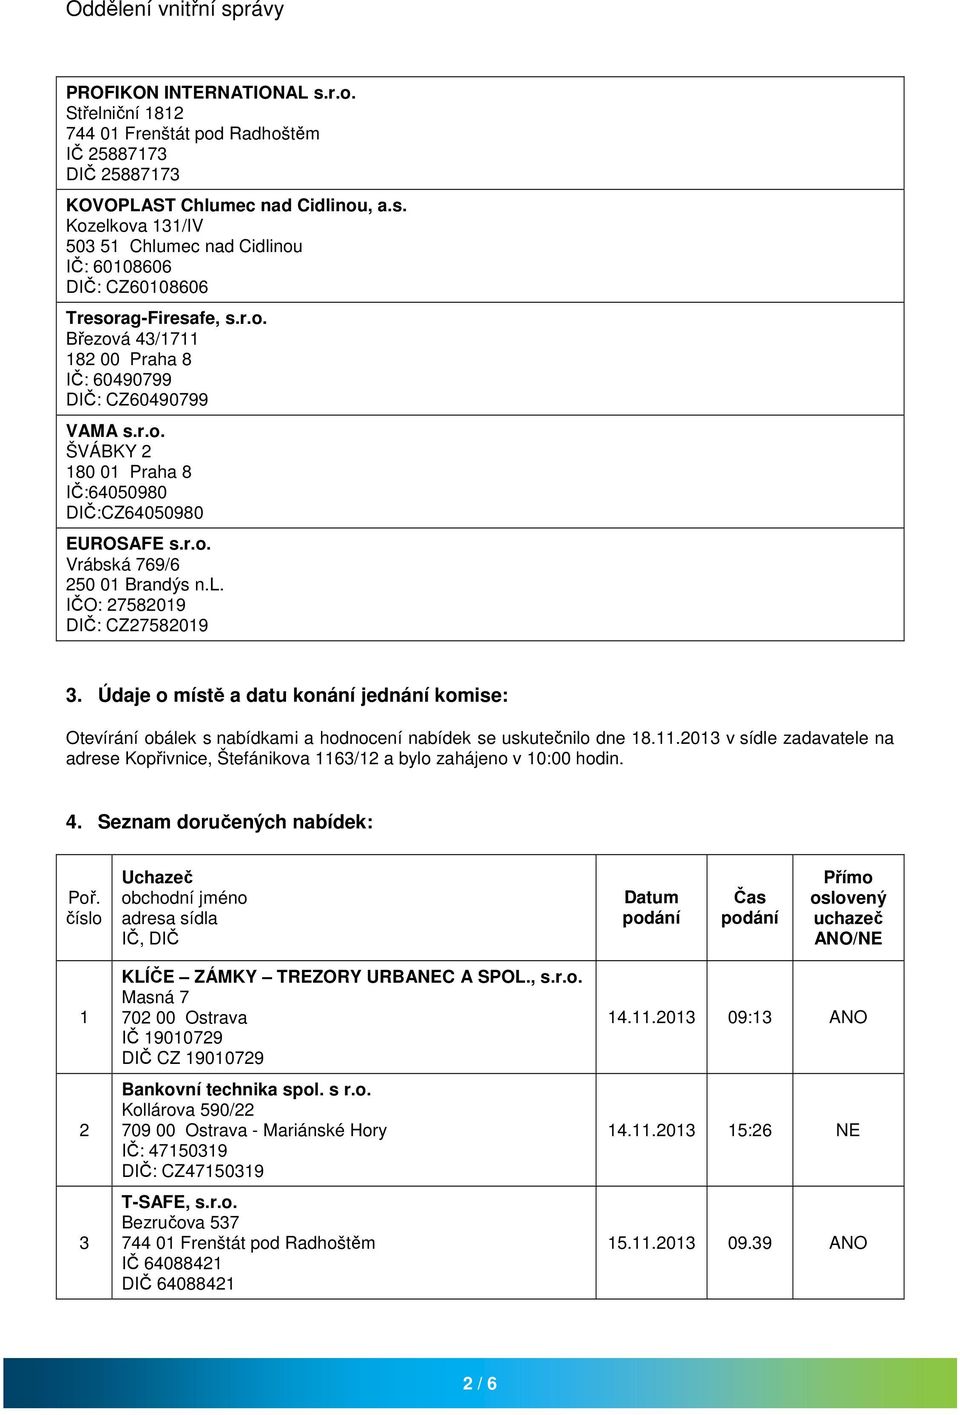 2013 v sídle zadavatele na adrese Kopřivnice, Štefánikova 1163/12 a bylo zahájeno v 10:00 hodin. 4. Seznam doručených nabídek: Poř.